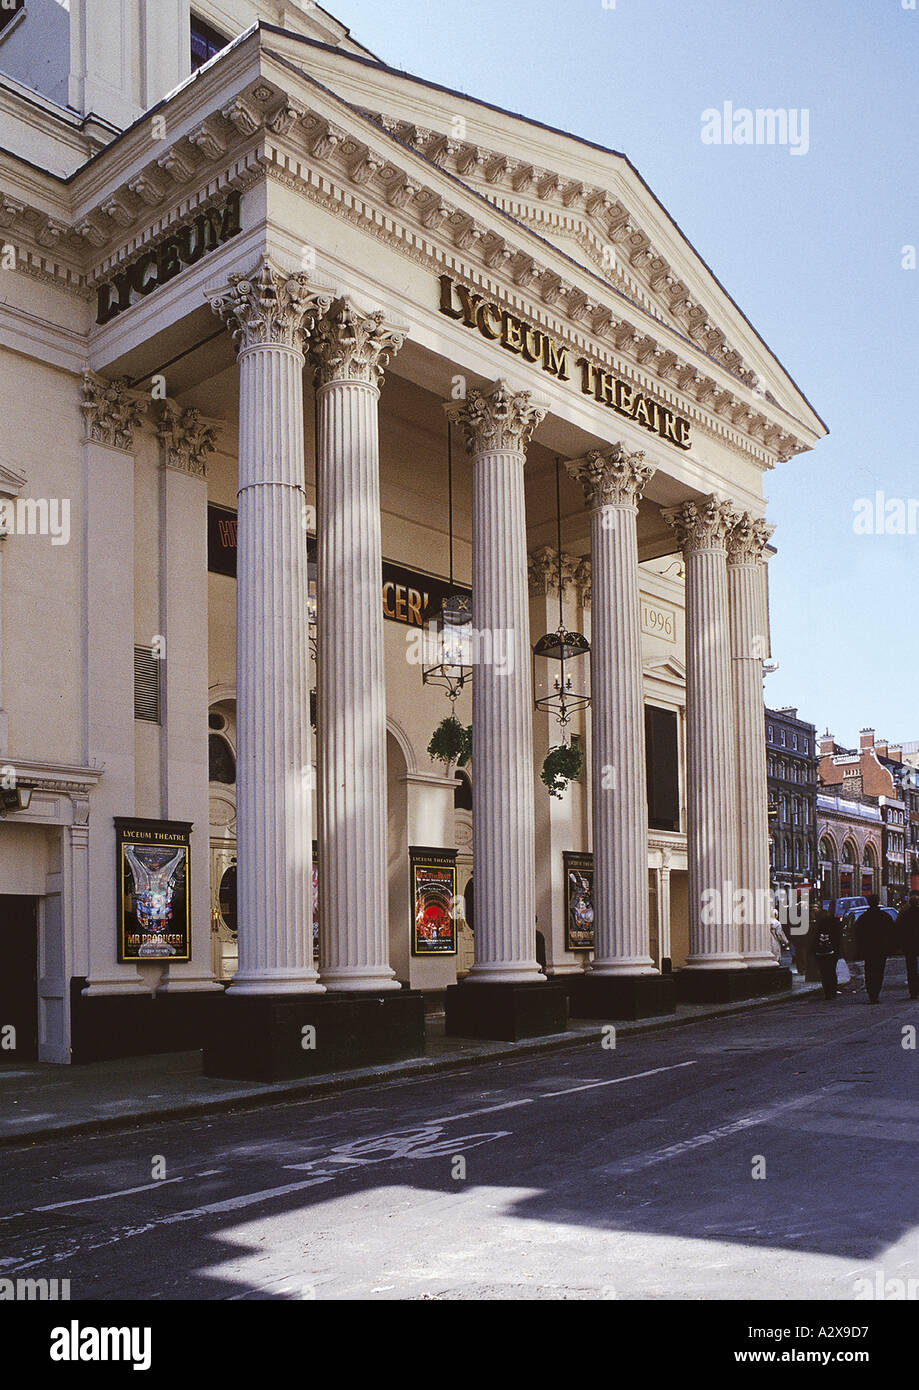 La façade de la rue Wellington Strand Lyceum Theatre, Londres UK Banque D'Images